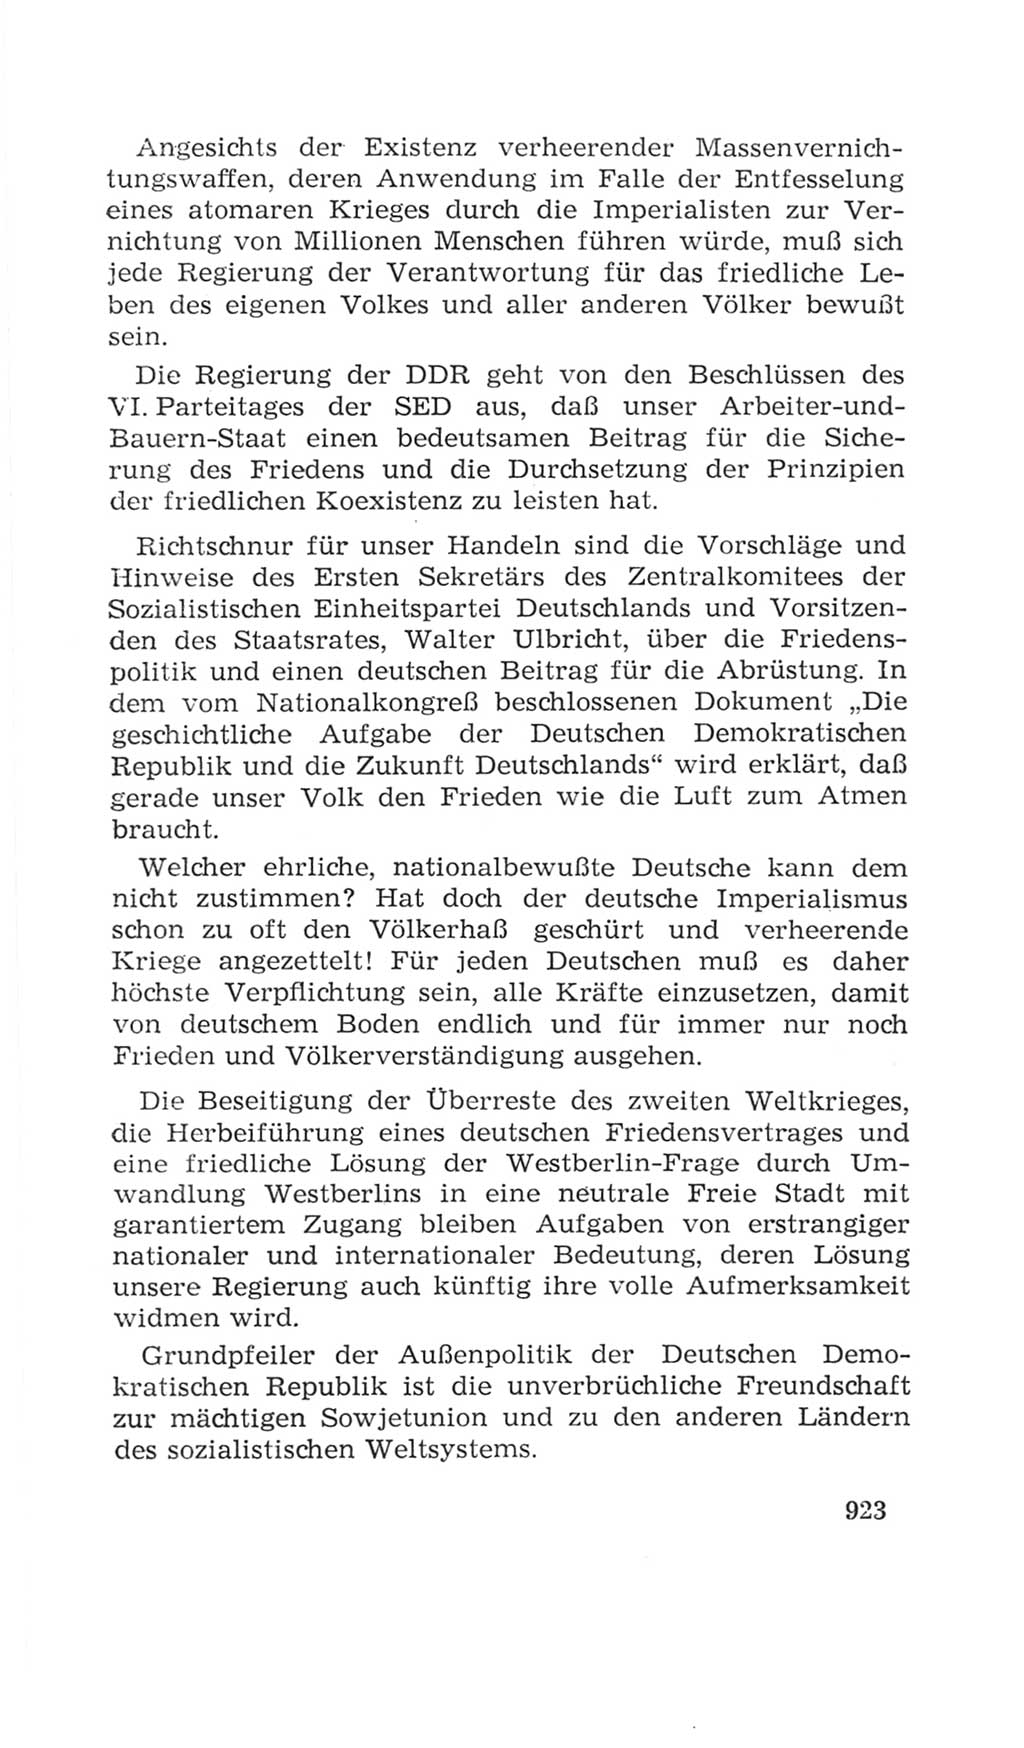 Volkskammer (VK) der Deutschen Demokratischen Republik (DDR), 4. Wahlperiode 1963-1967, Seite 923 (VK. DDR 4. WP. 1963-1967, S. 923)